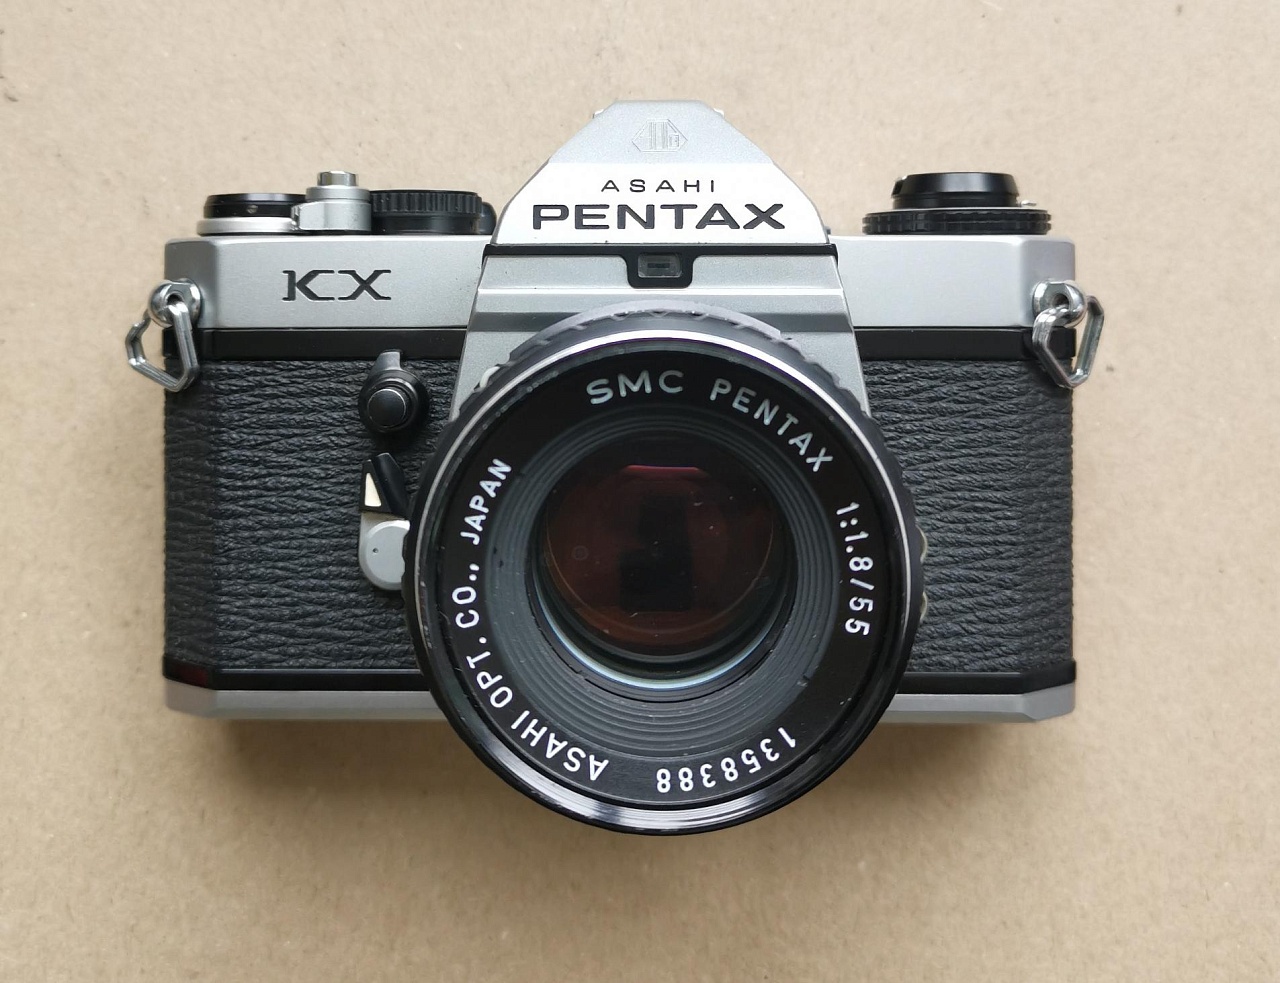 Pentax KX + SMC Pentax 55 mm/1,8 фото №1